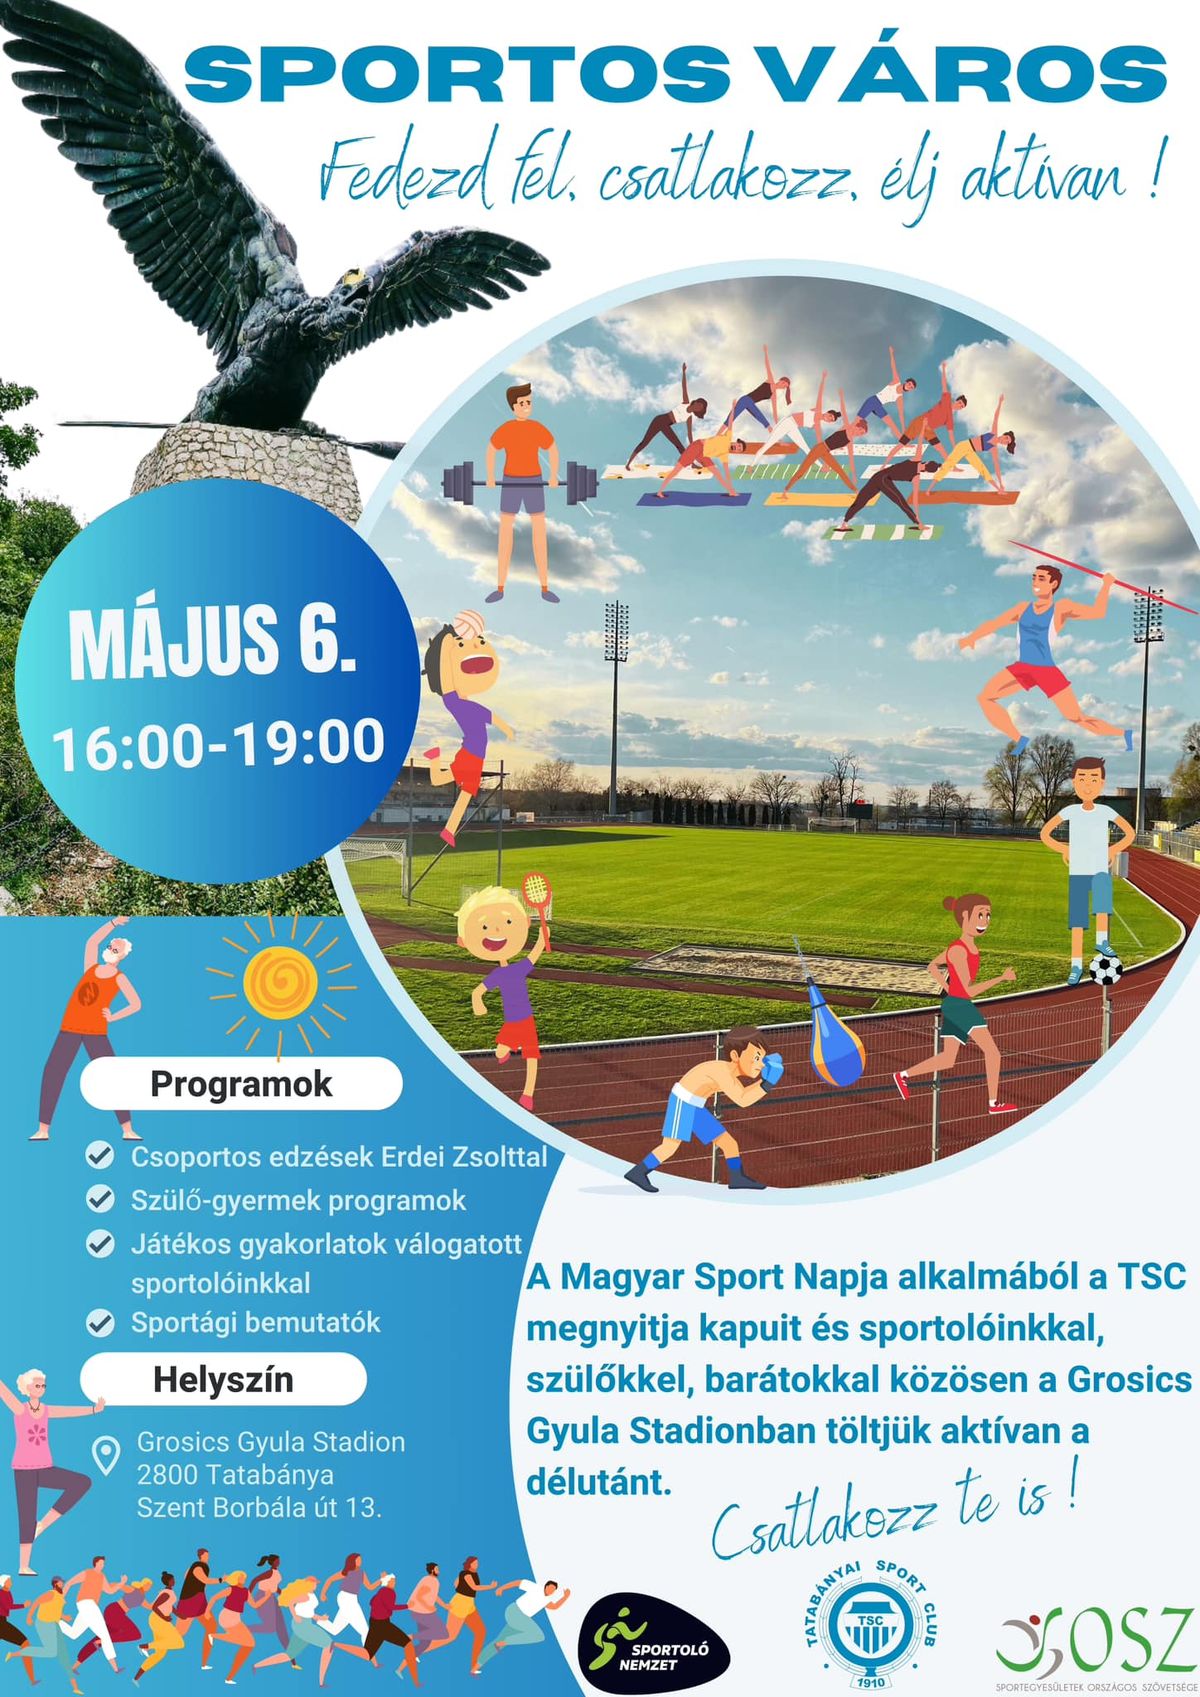 Május 6-án különleges programokon vehetnek részt a Grosics Gyula Stadionba kilátogatók. A Magyar Sport Napja alkalmából egy rendezvény keretében tölthetik majd az időt a sport szerelmesei.